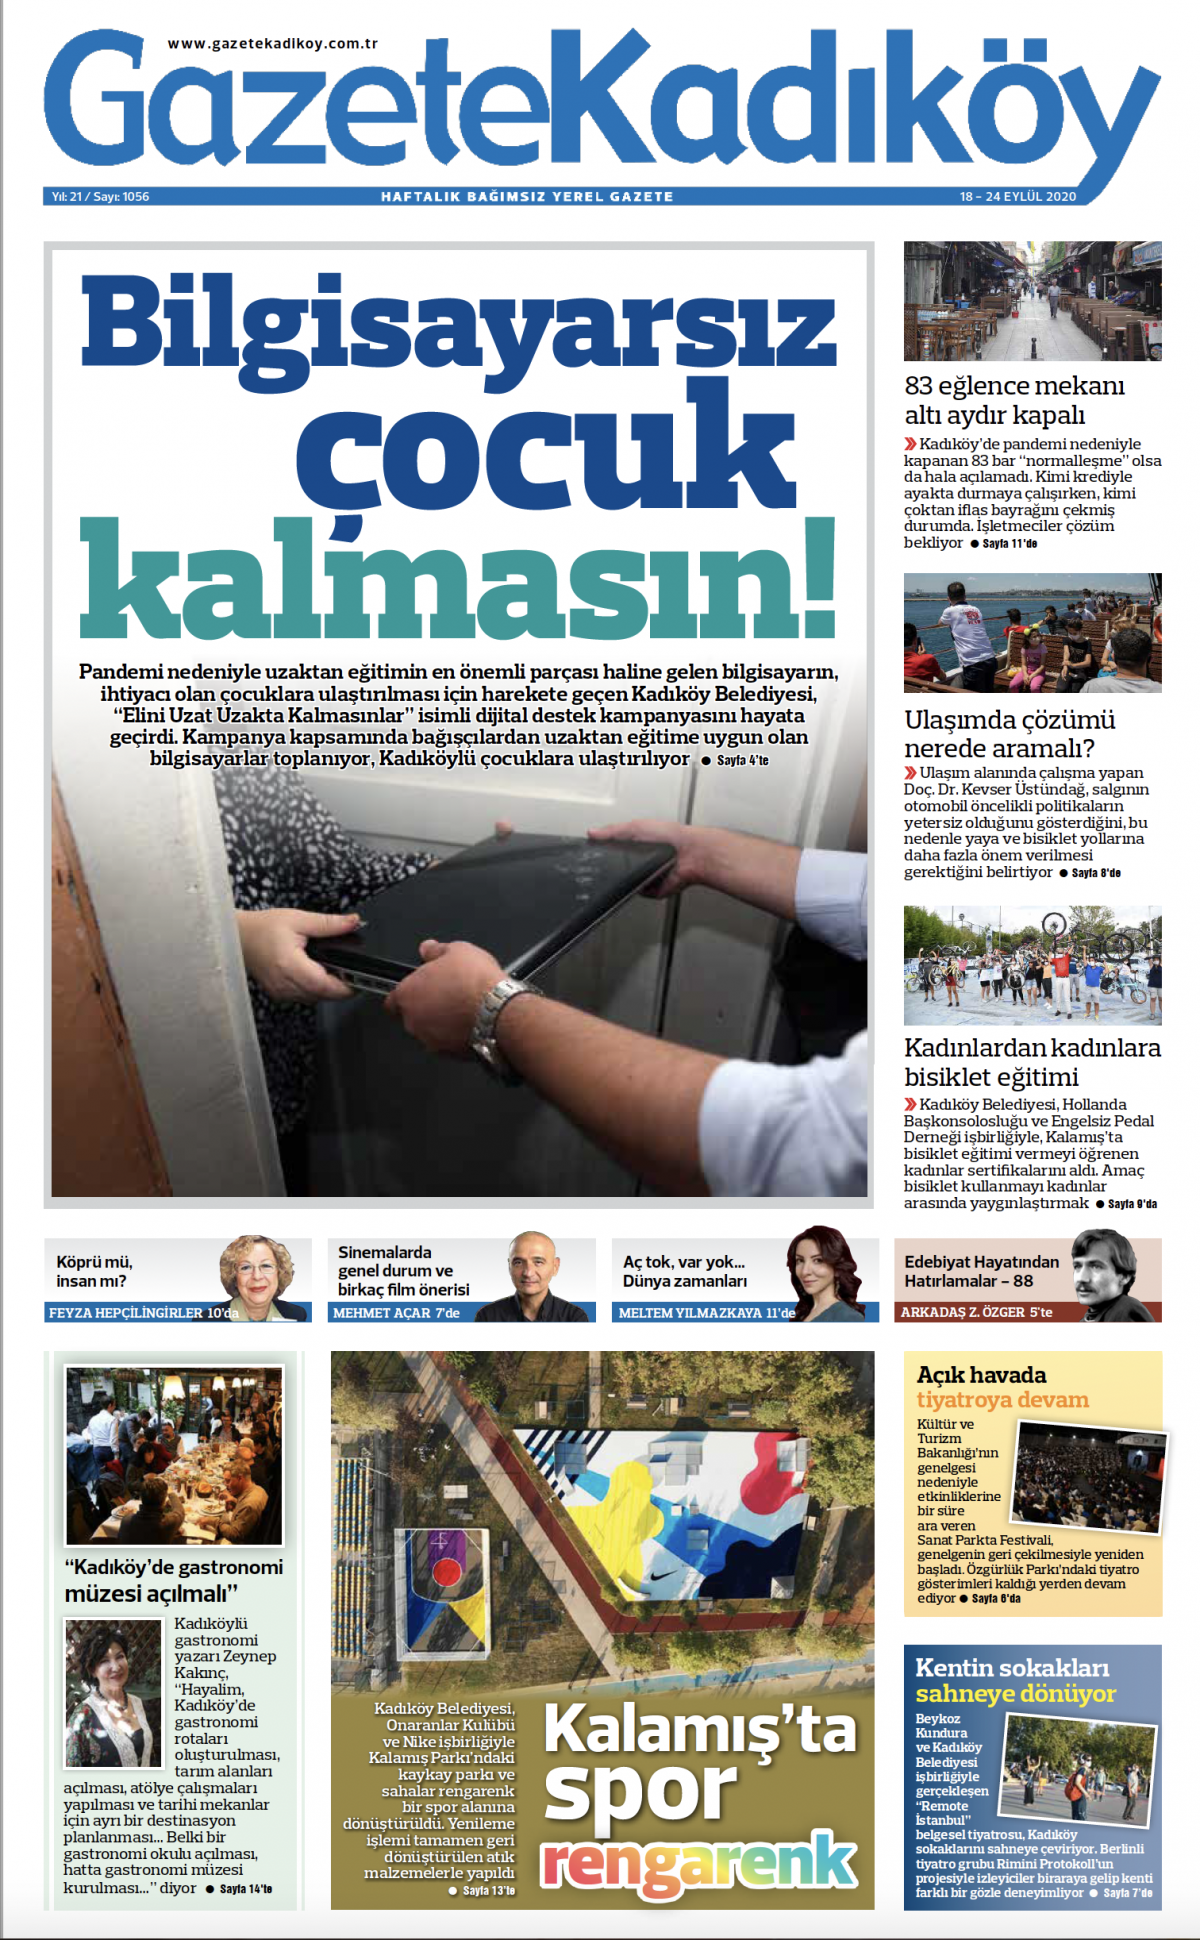 Gazete Kadıköy - 1056. Sayı